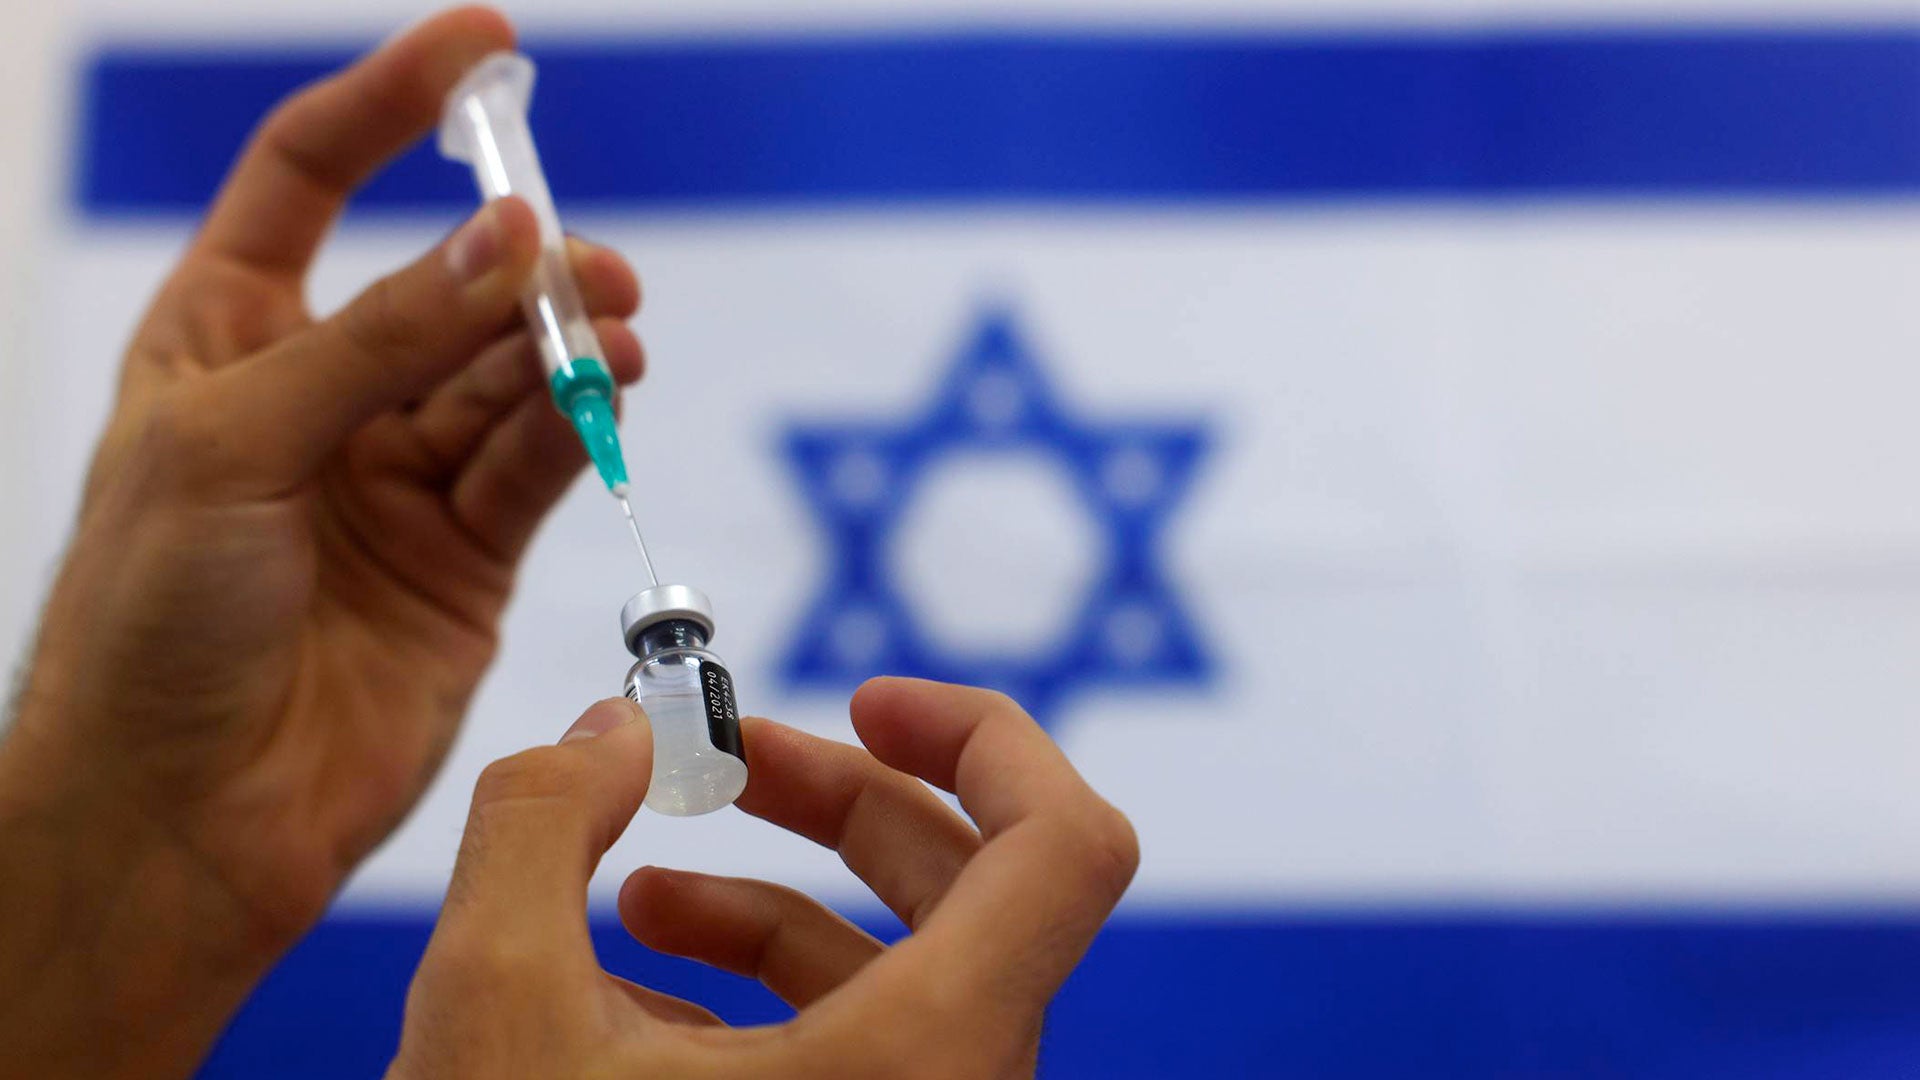 Просроченные вакцины. Минздрав Израиля. Порошкообразная вакцина Файзер.